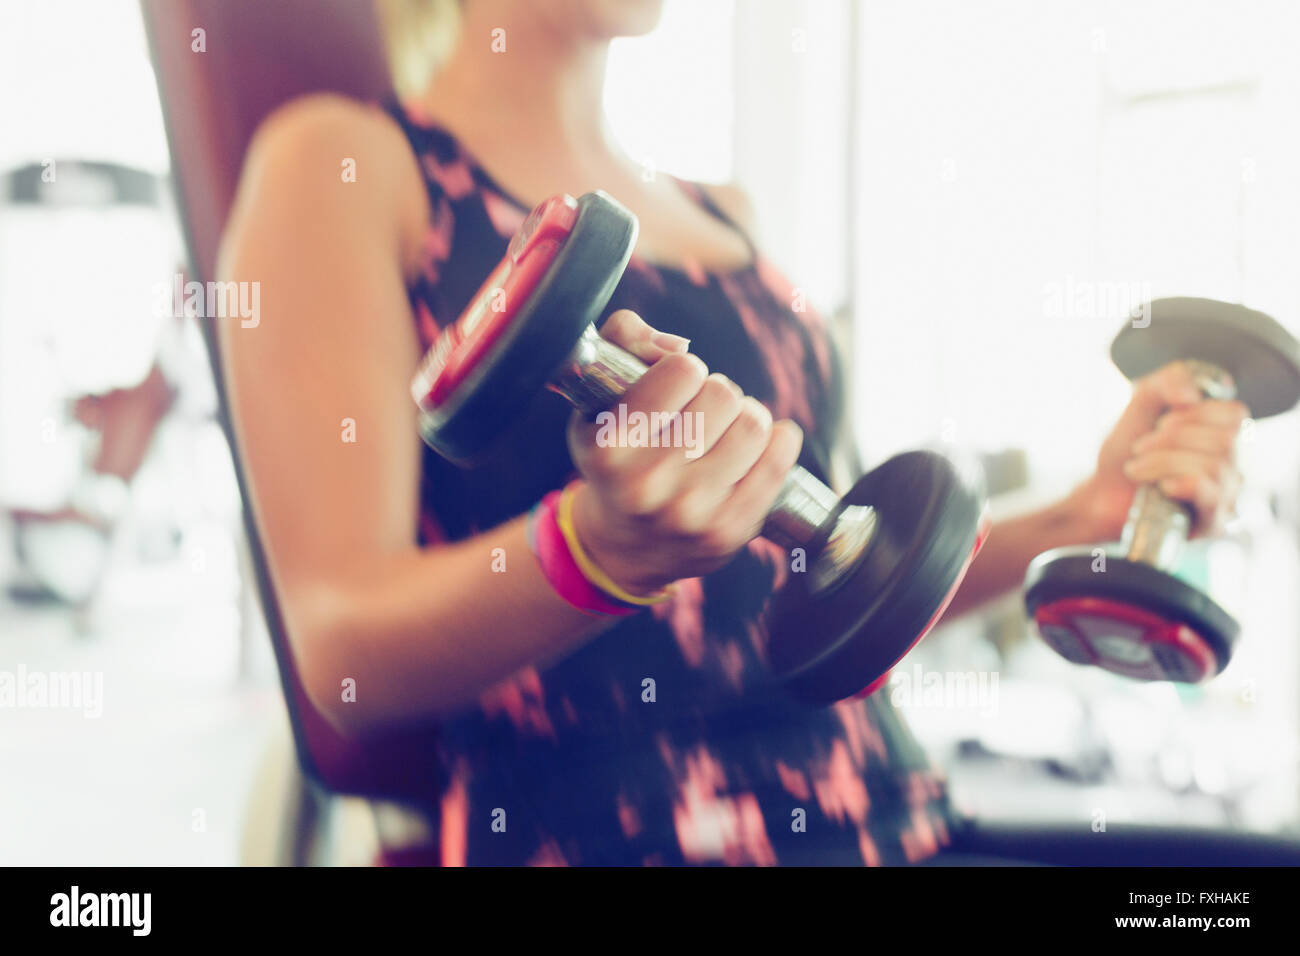 Blurred motion faisant haltère biceps at gym Banque D'Images